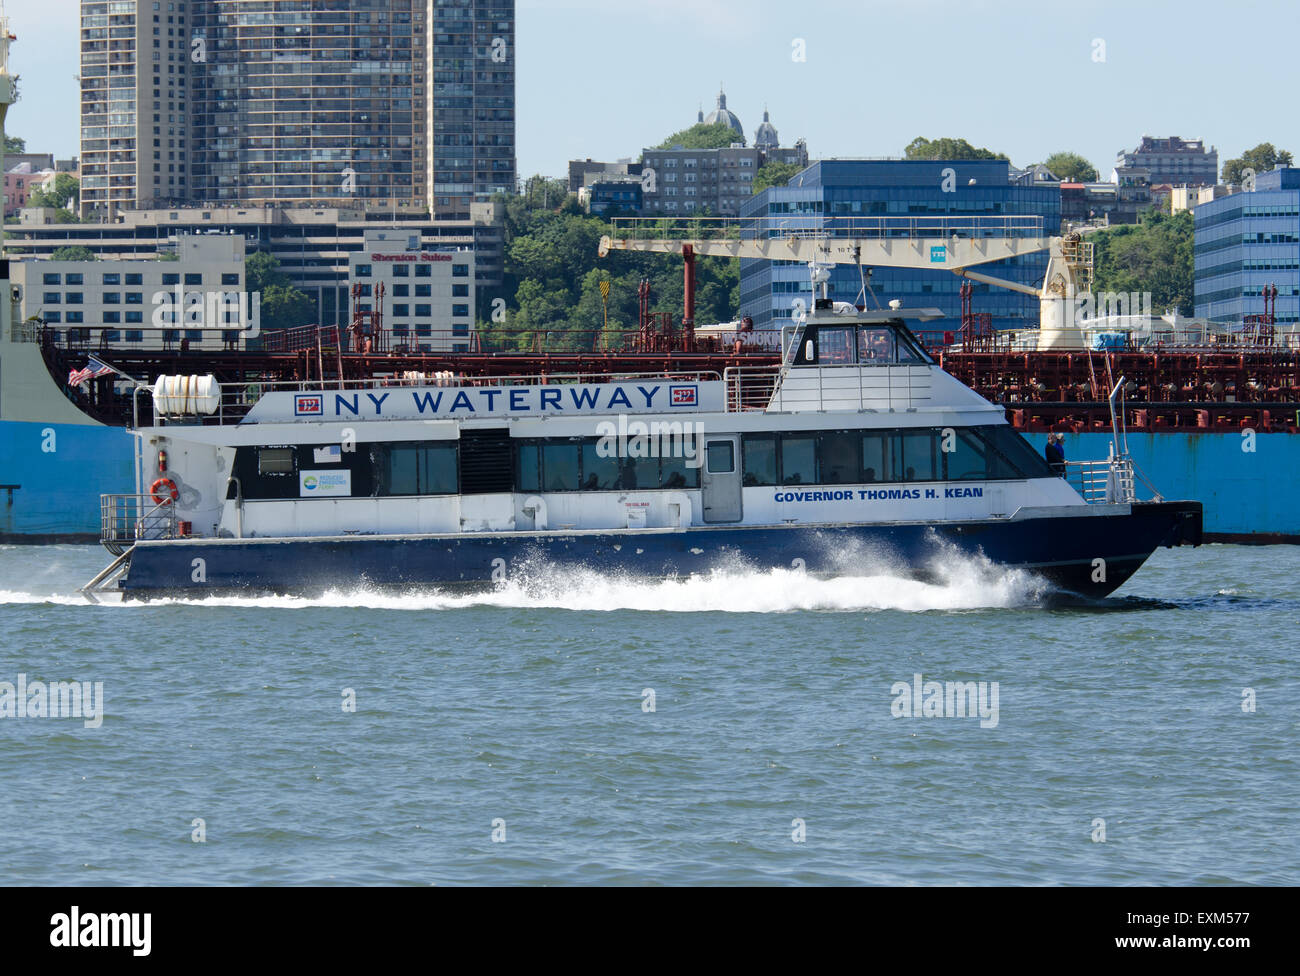 NY Waterway ferry boat 'Governor Thomas H. Kean' high speed catamaran, Haverstraw–Ossining Ferry, Hudson River, New York, NY Stock Photo